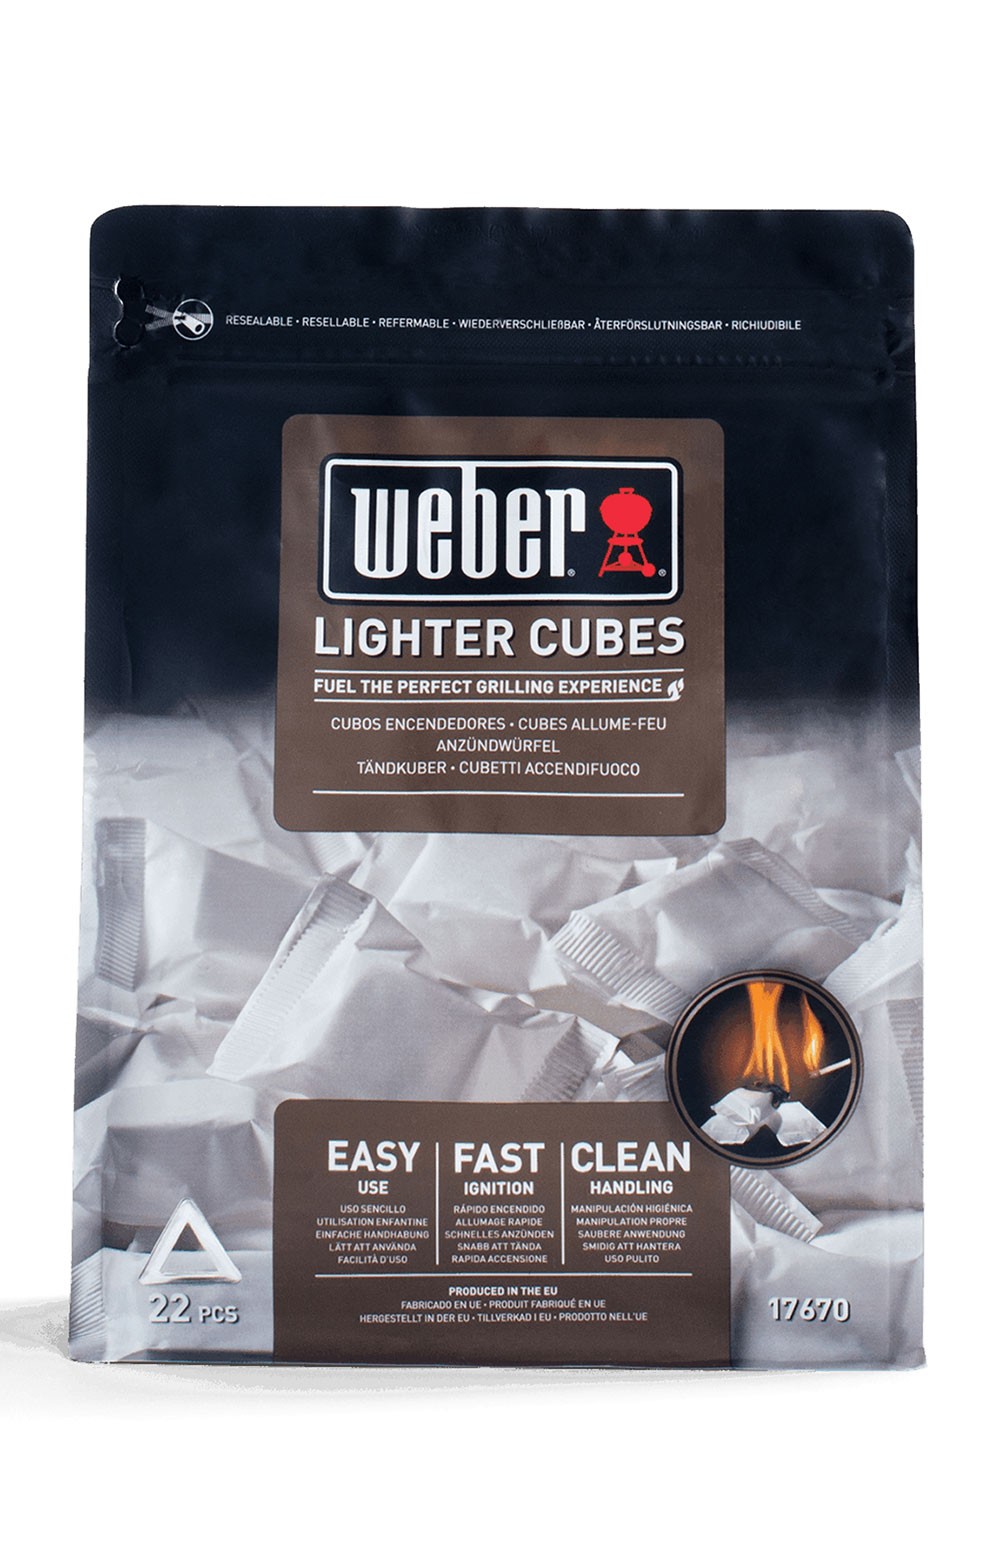  Lighter Cubes